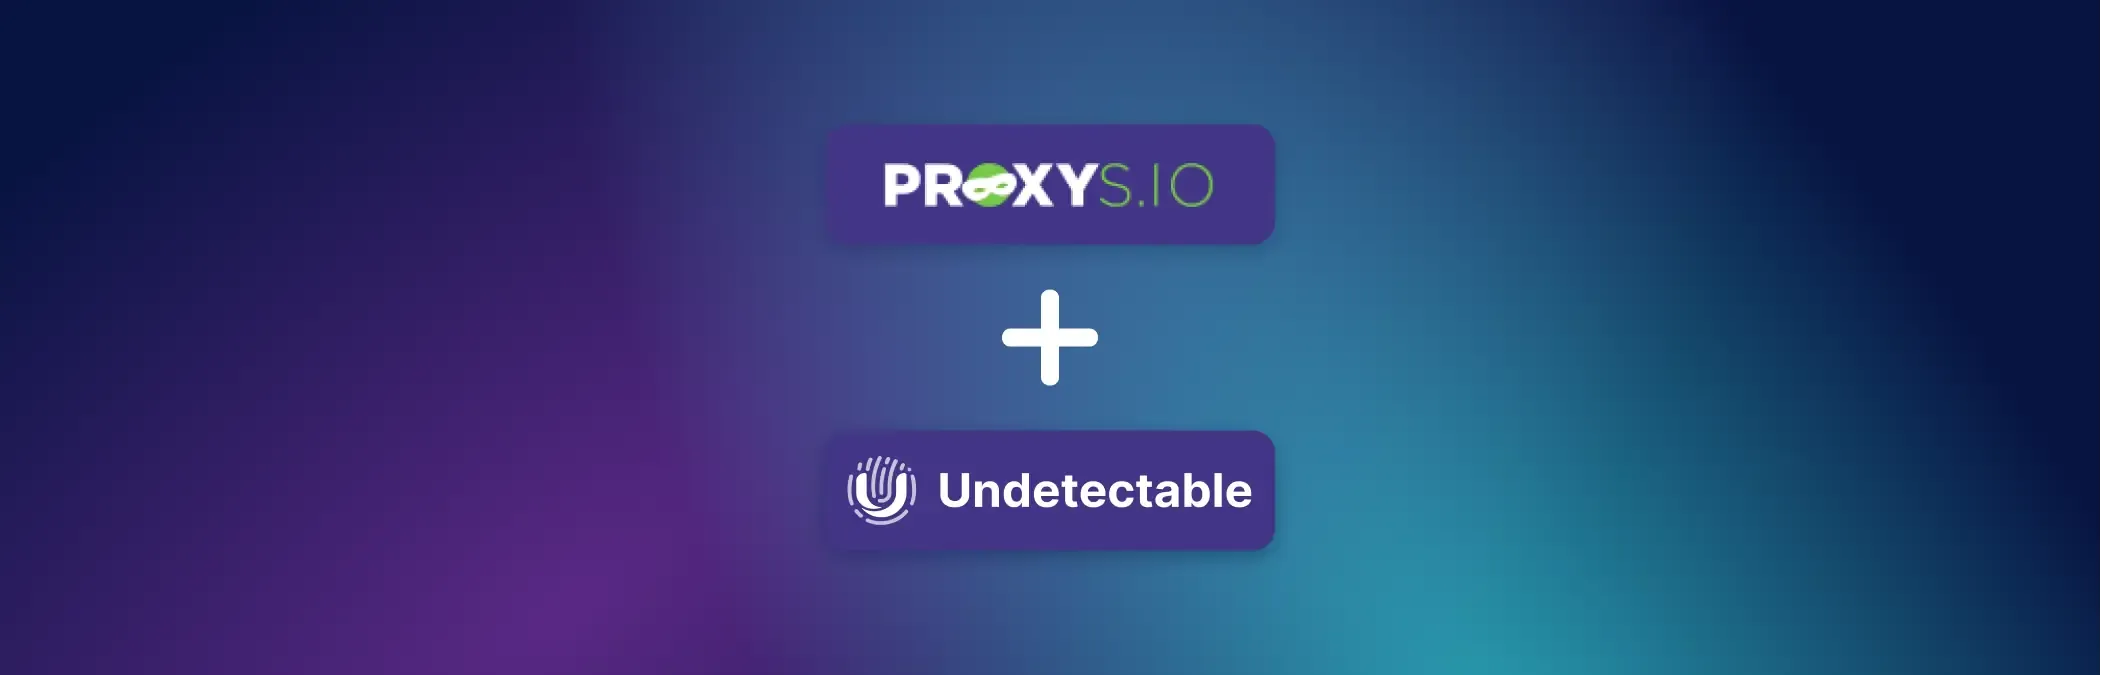 Гайд по использованию сервиса Proxys.io в браузере Undetectable